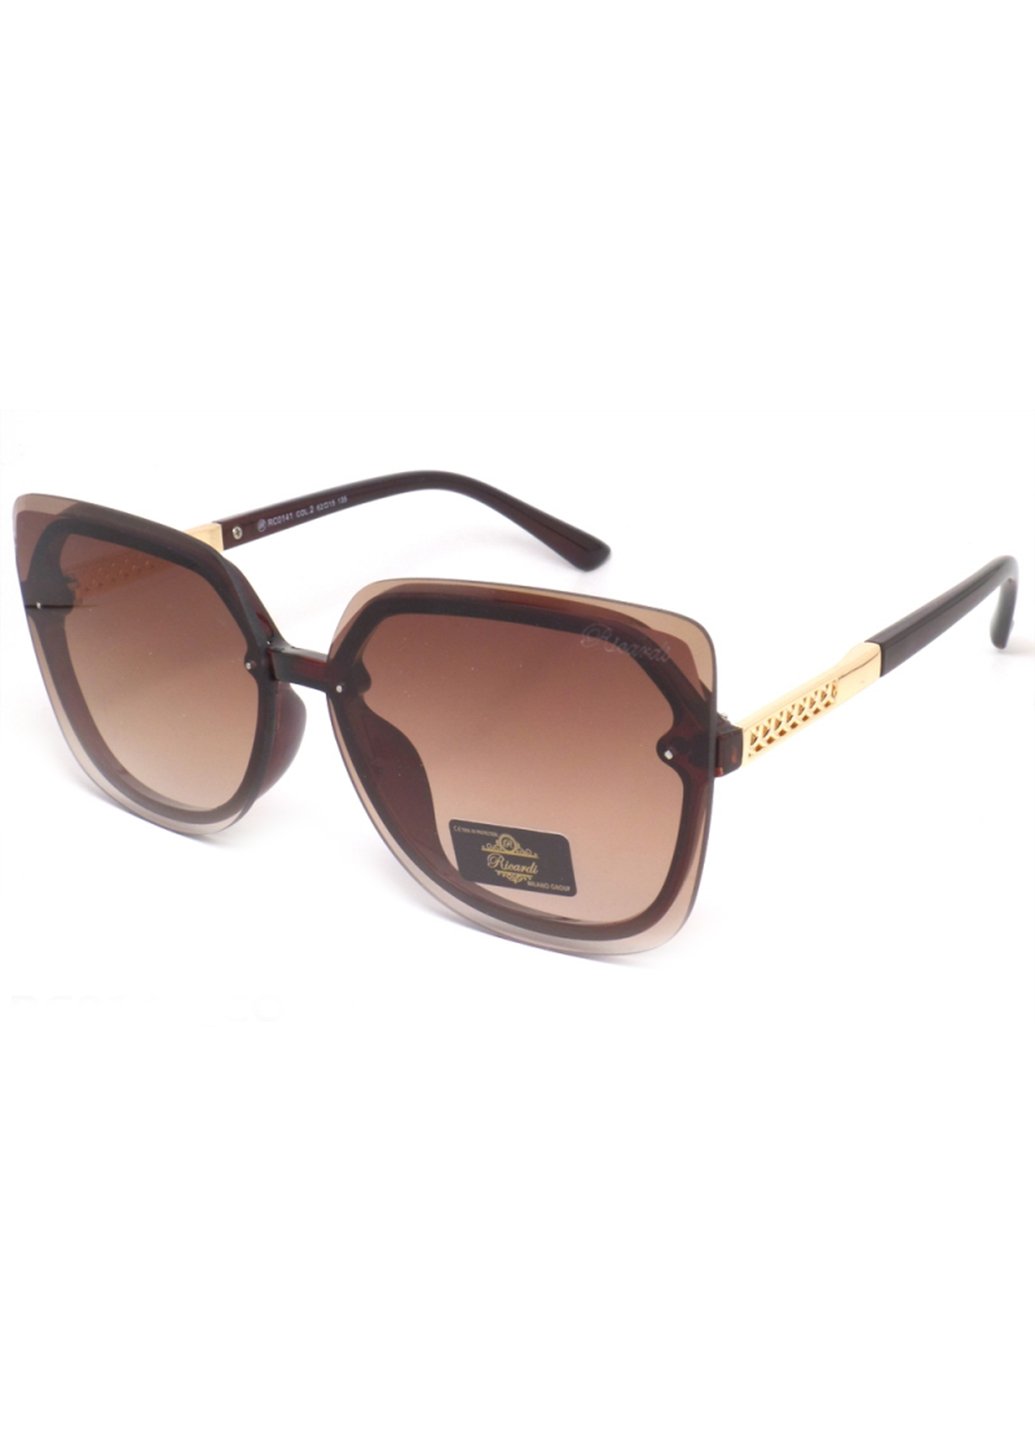 Купить Женские солнцезащитные очки Ricardi RC0141 110002 - Коричневый в интернет-магазине